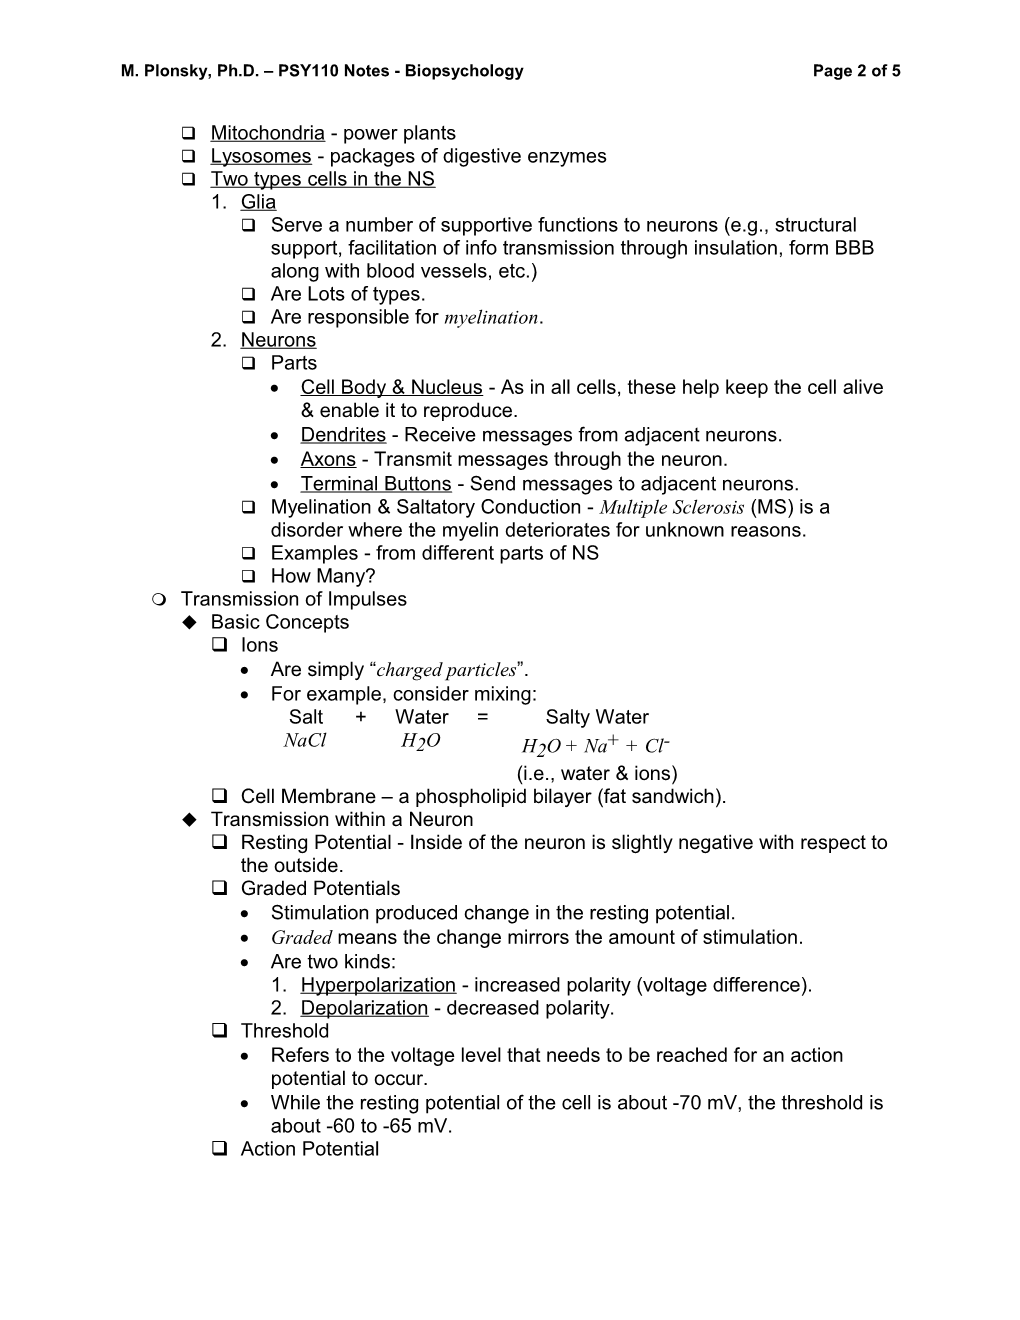 M. Plonsky, Ph.D. PSY110 Notes - Biopsychologypage 1 of 5